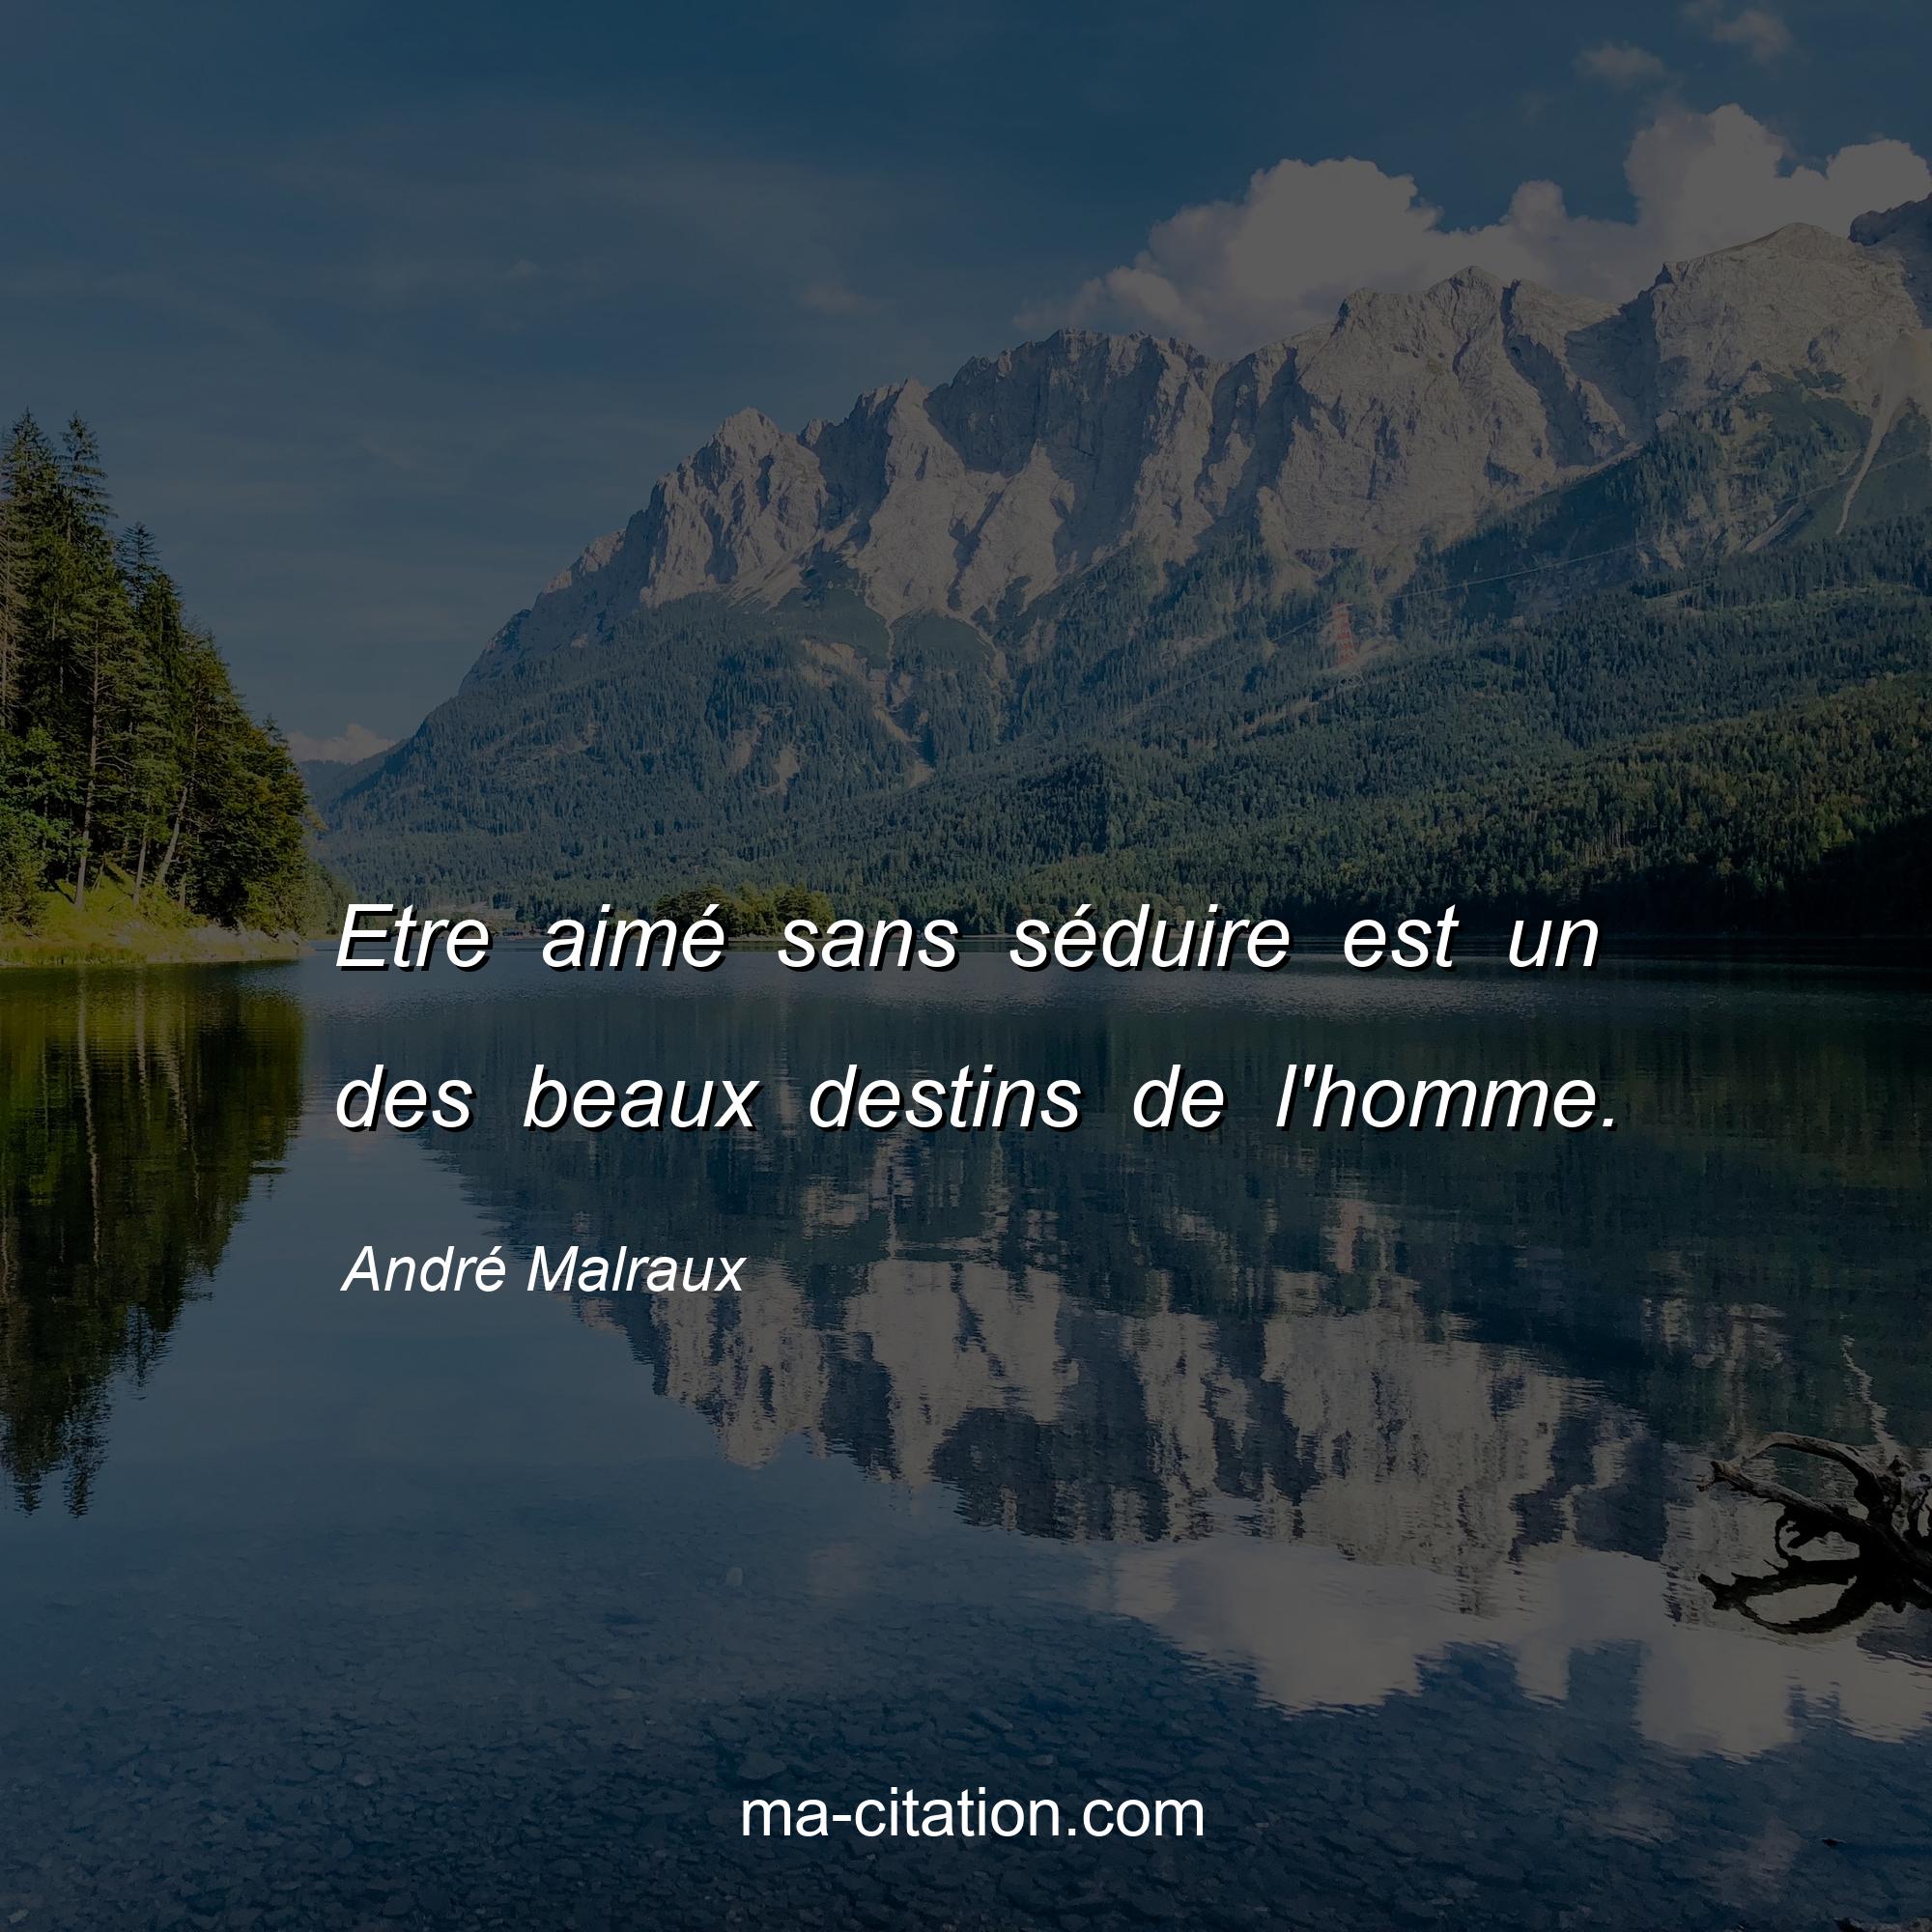 André Malraux : Etre aimé sans séduire est un des beaux destins de l'homme.